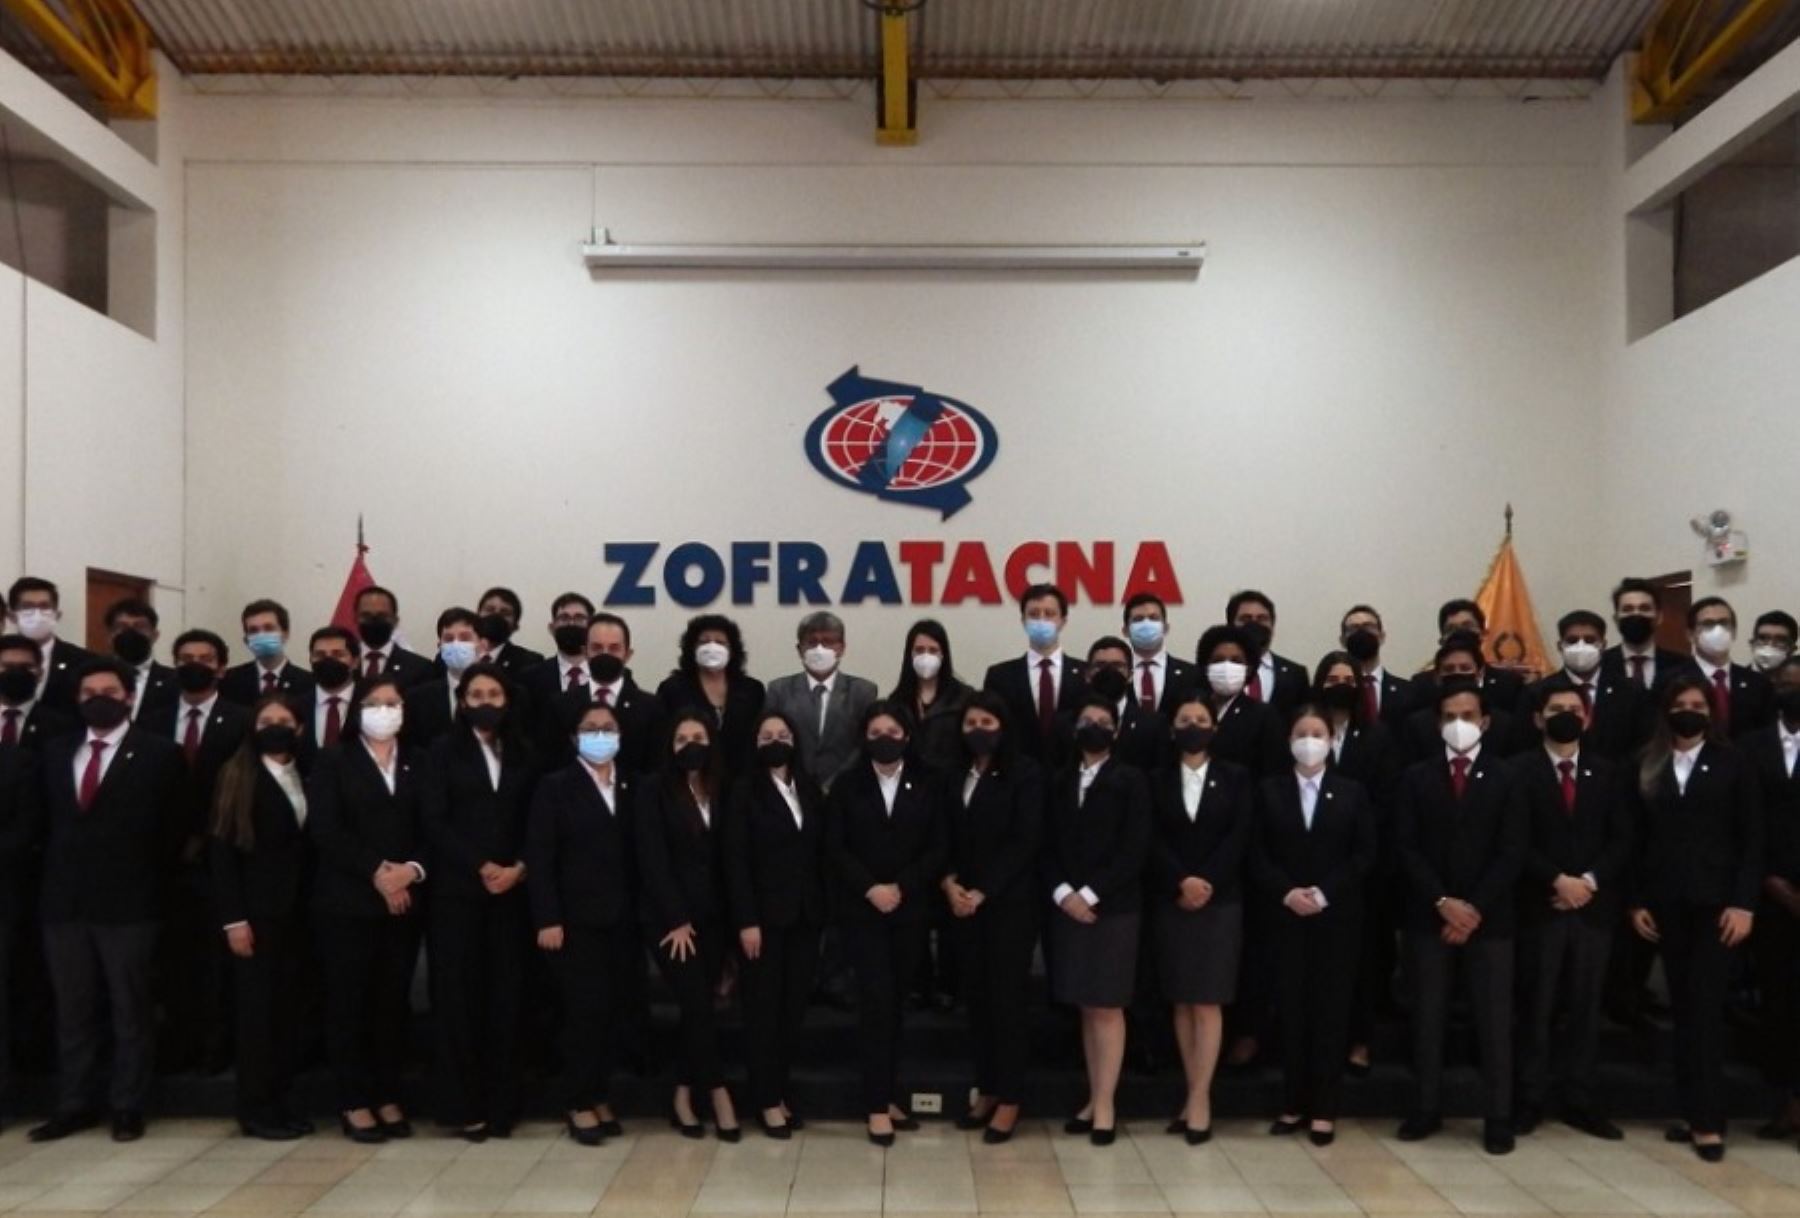 Una delegación de alumnos de la Academia Diplomática del Perú Javier Pérez de Cuéllar visitó las instalaciones del complejo de la Zona Franca de Tacna (Zofratacna) con la finalidad de conocer las operaciones que se realizan para la exportación e importación de diversos productos y servicios.